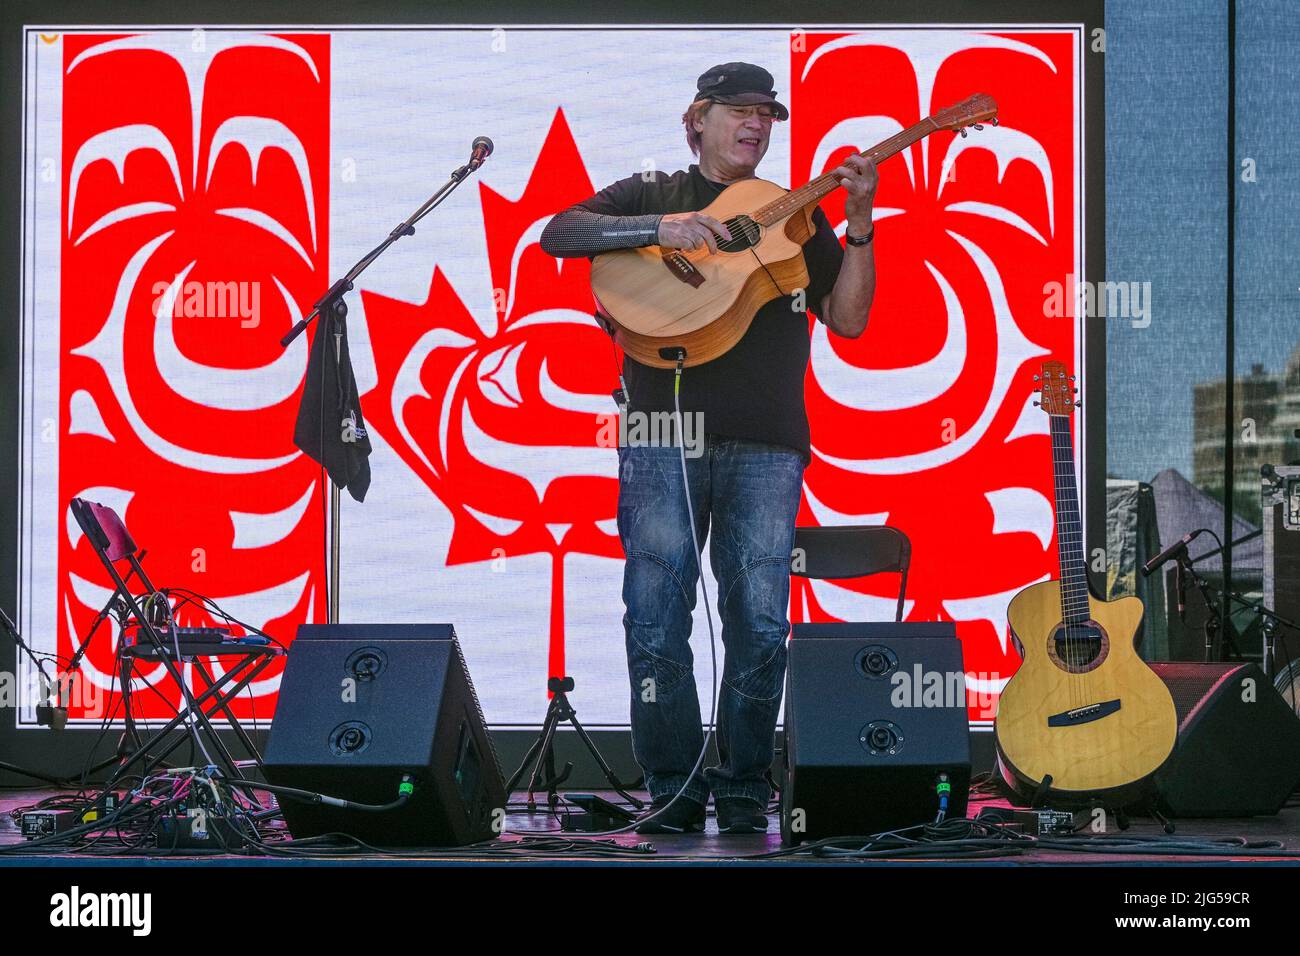 Don Alder, acoustic guitarist, Canada Day, Victoria, British Columbia, Canada Stock Photo